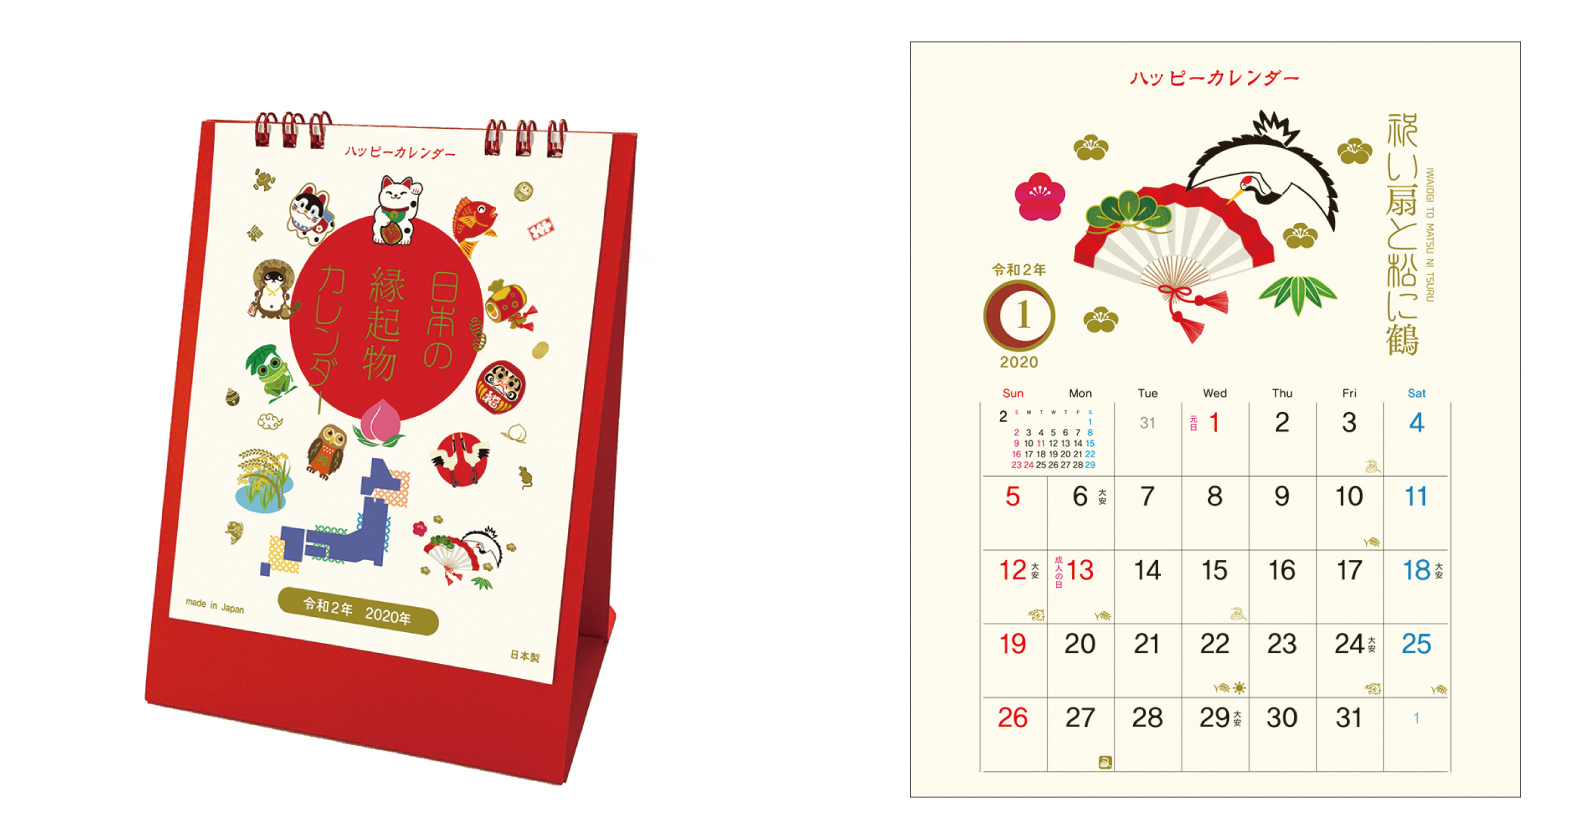 年日々の暮らしに幸せを運ぶカレンダー 日本の縁起物シリーズ ハッピーカレンダー 卓上 新発売 株式会社トーダンのプレスリリース